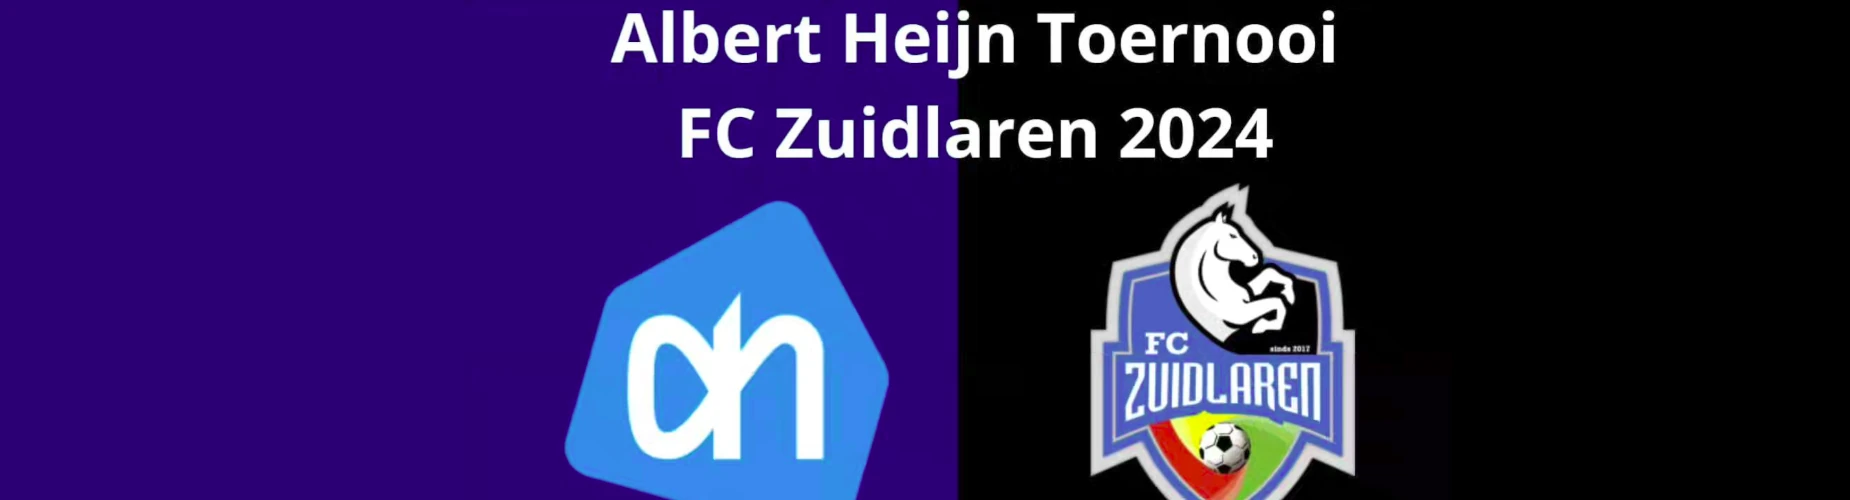 Banner - O11 - Albert Heijn toernooi FC Zuidlaren - FC Zuidlaren - Zuidlaren